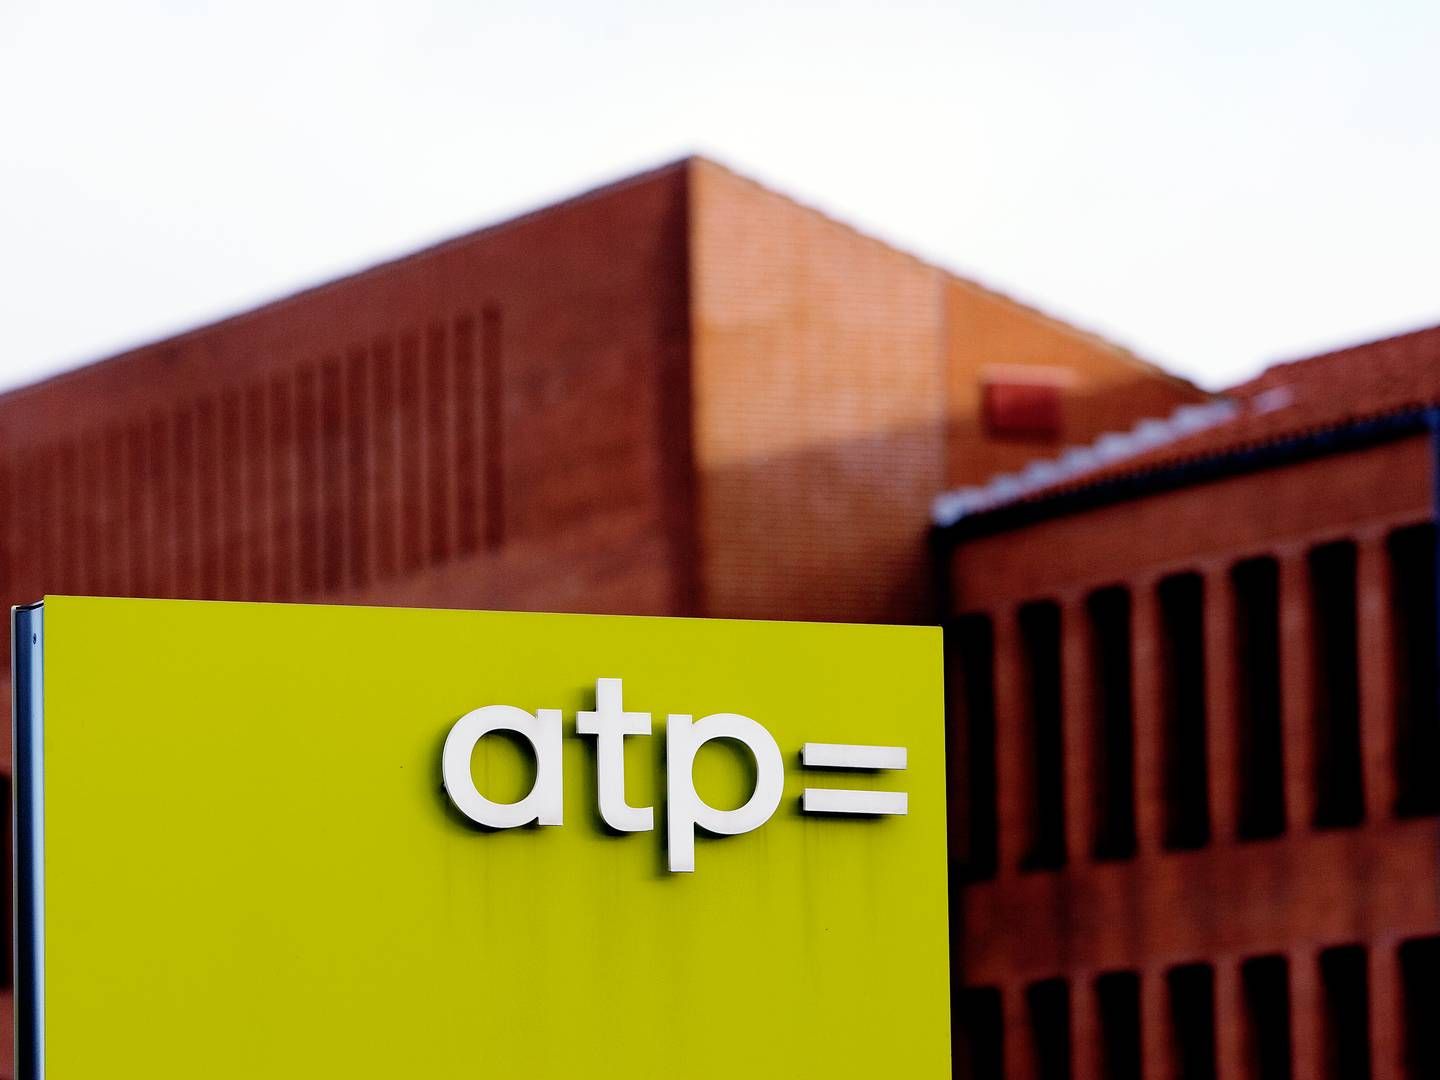 ATP har godt 5,5 mio. medlemmer og havde ved udgangen af tredje kvartal en formue på godt 675 mia. kr. | Foto: Thomas Borberg/Politiken/Ritzau Scanpix